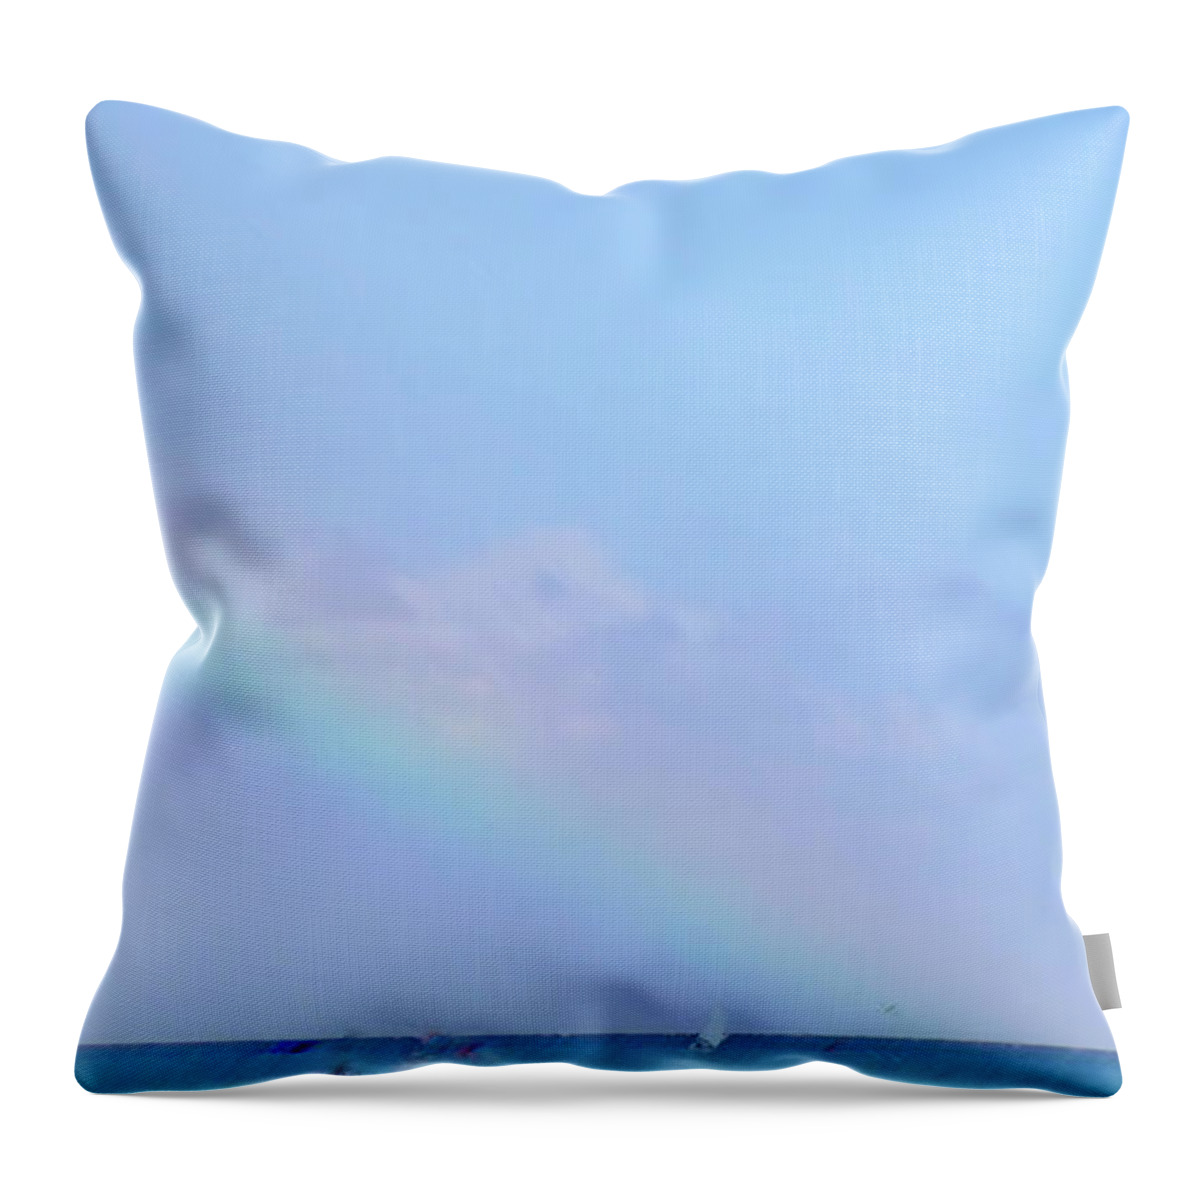 Rainbow Throw Pillow featuring the digital art Rainbow at the beach 2 by Francesca Mackenney